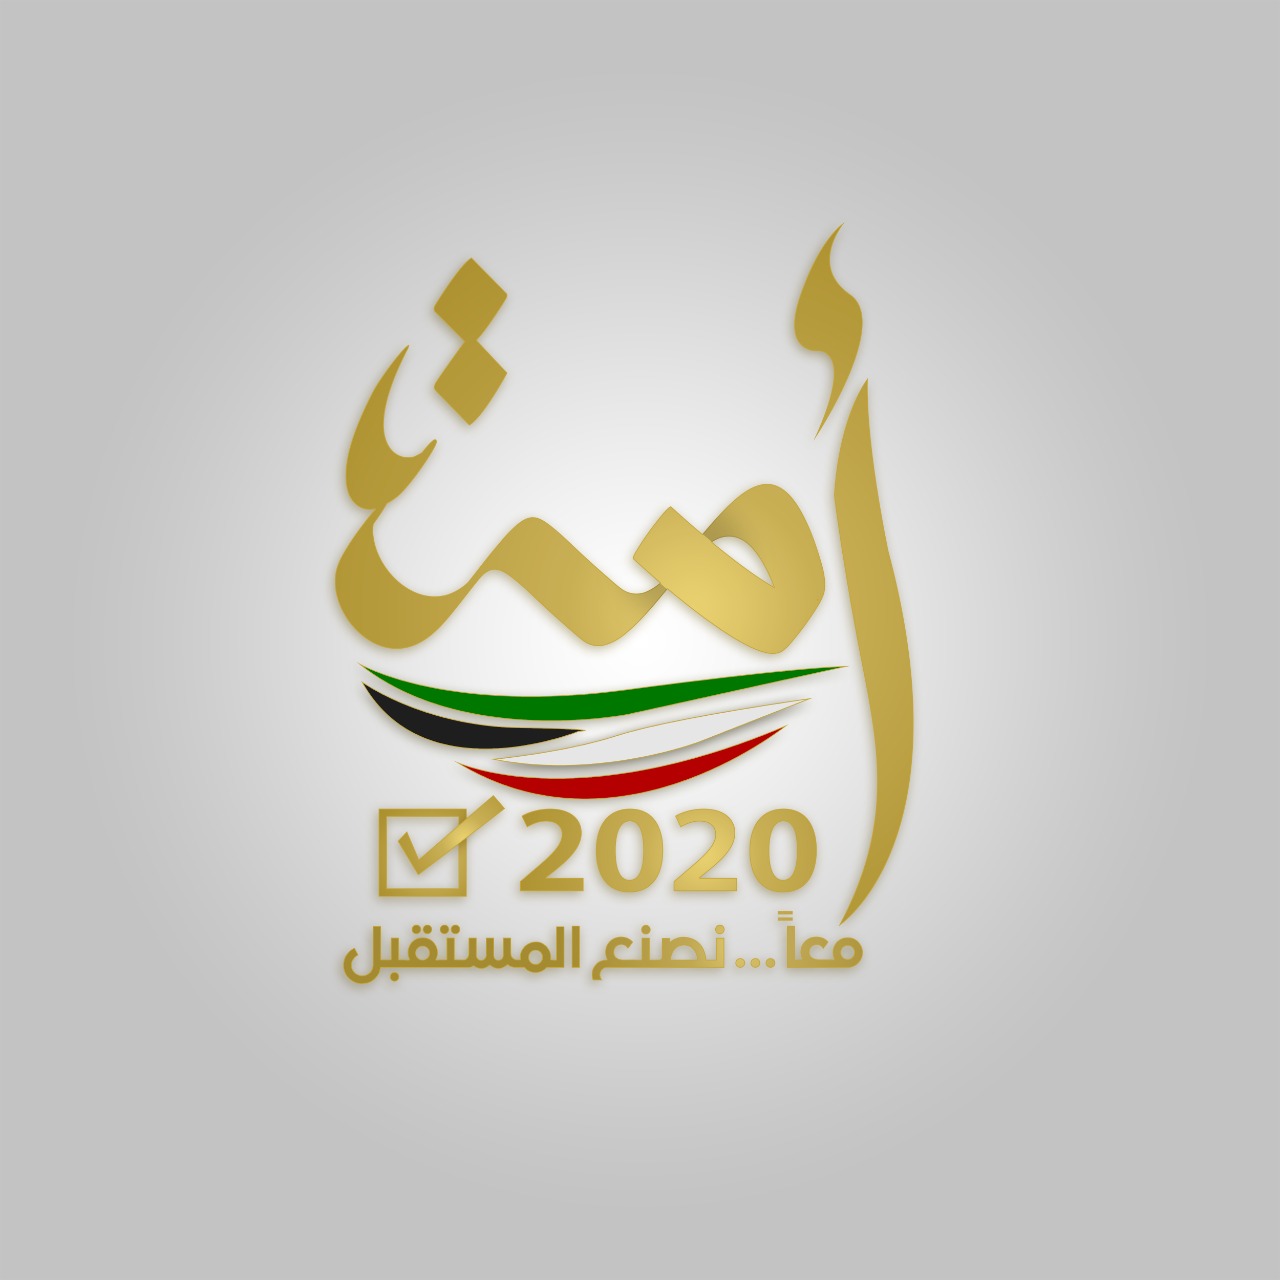 الناخبون الكويتيون يتوجهون غدا لانتخاب أعضاء (أمة 2020) وسط احترازات صحية